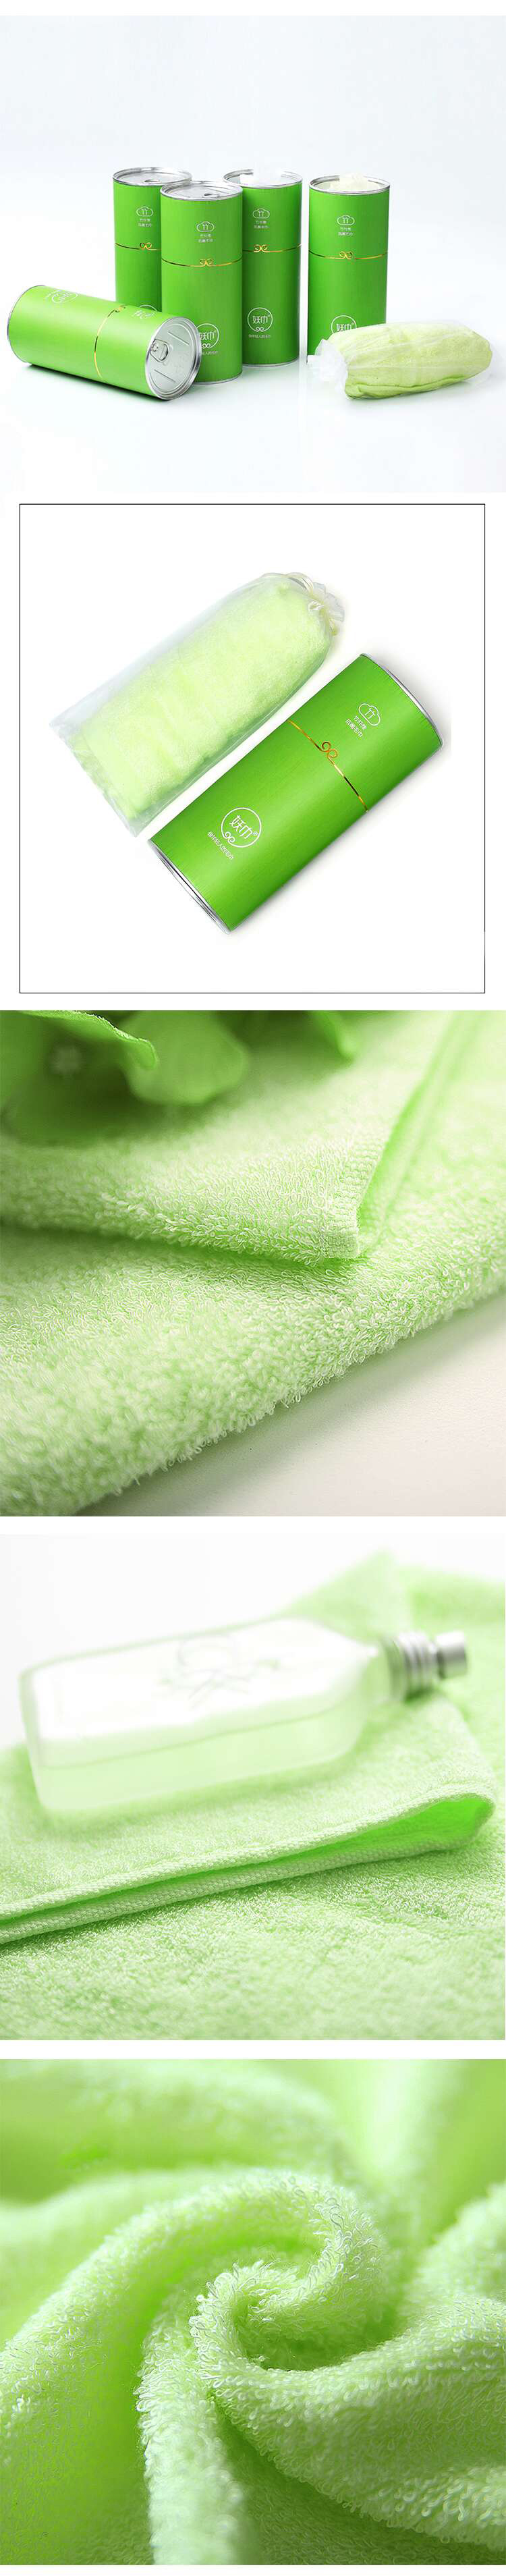 妖巾-竹纤维抑菌毛巾